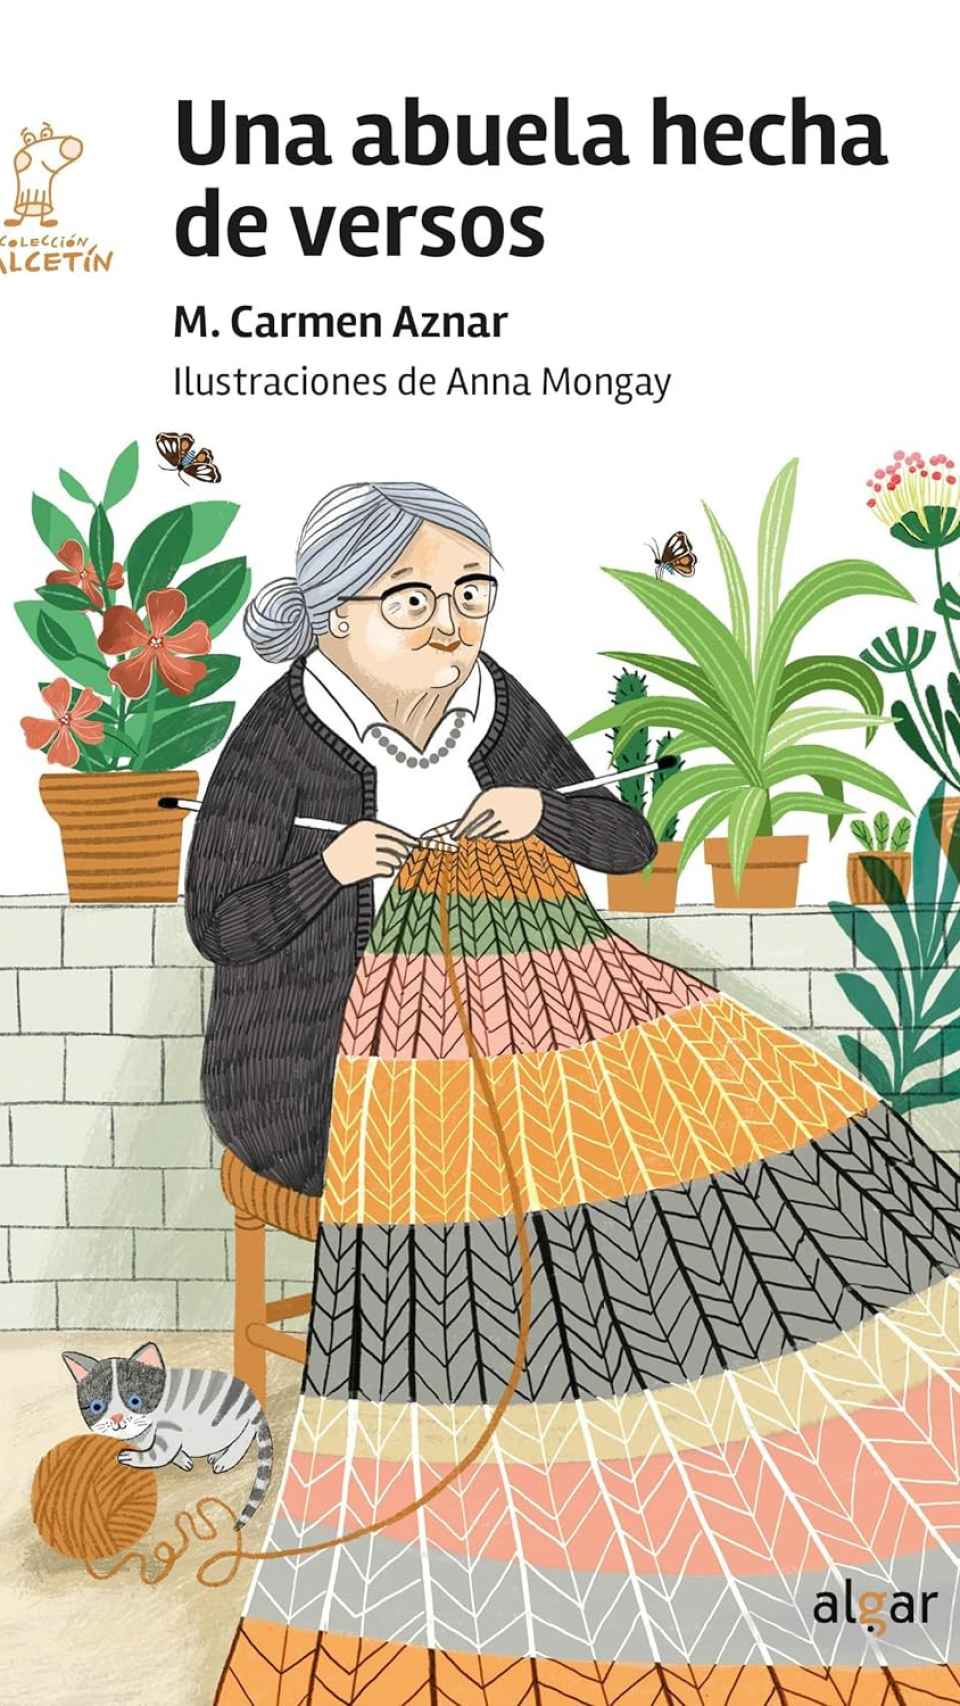 'Una abuela hecha en versos', un libro de M. Carmen Aznar